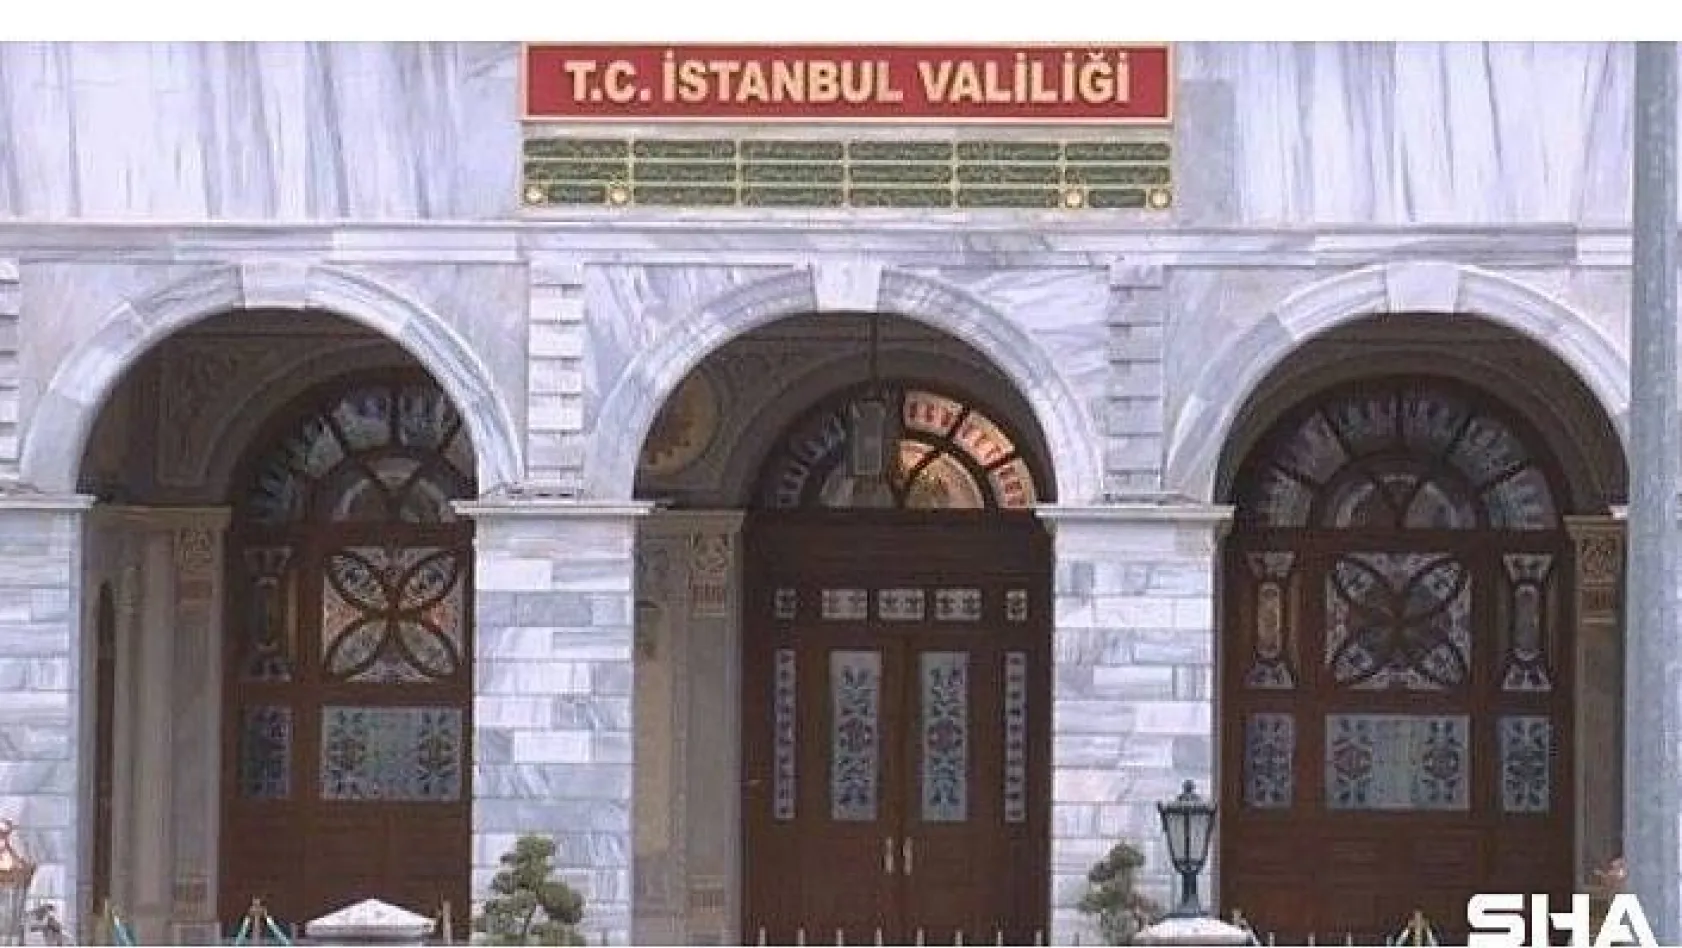 İstanbul Valiliği İl Hıfzısıhha Meclisi'nden yeni kararlar